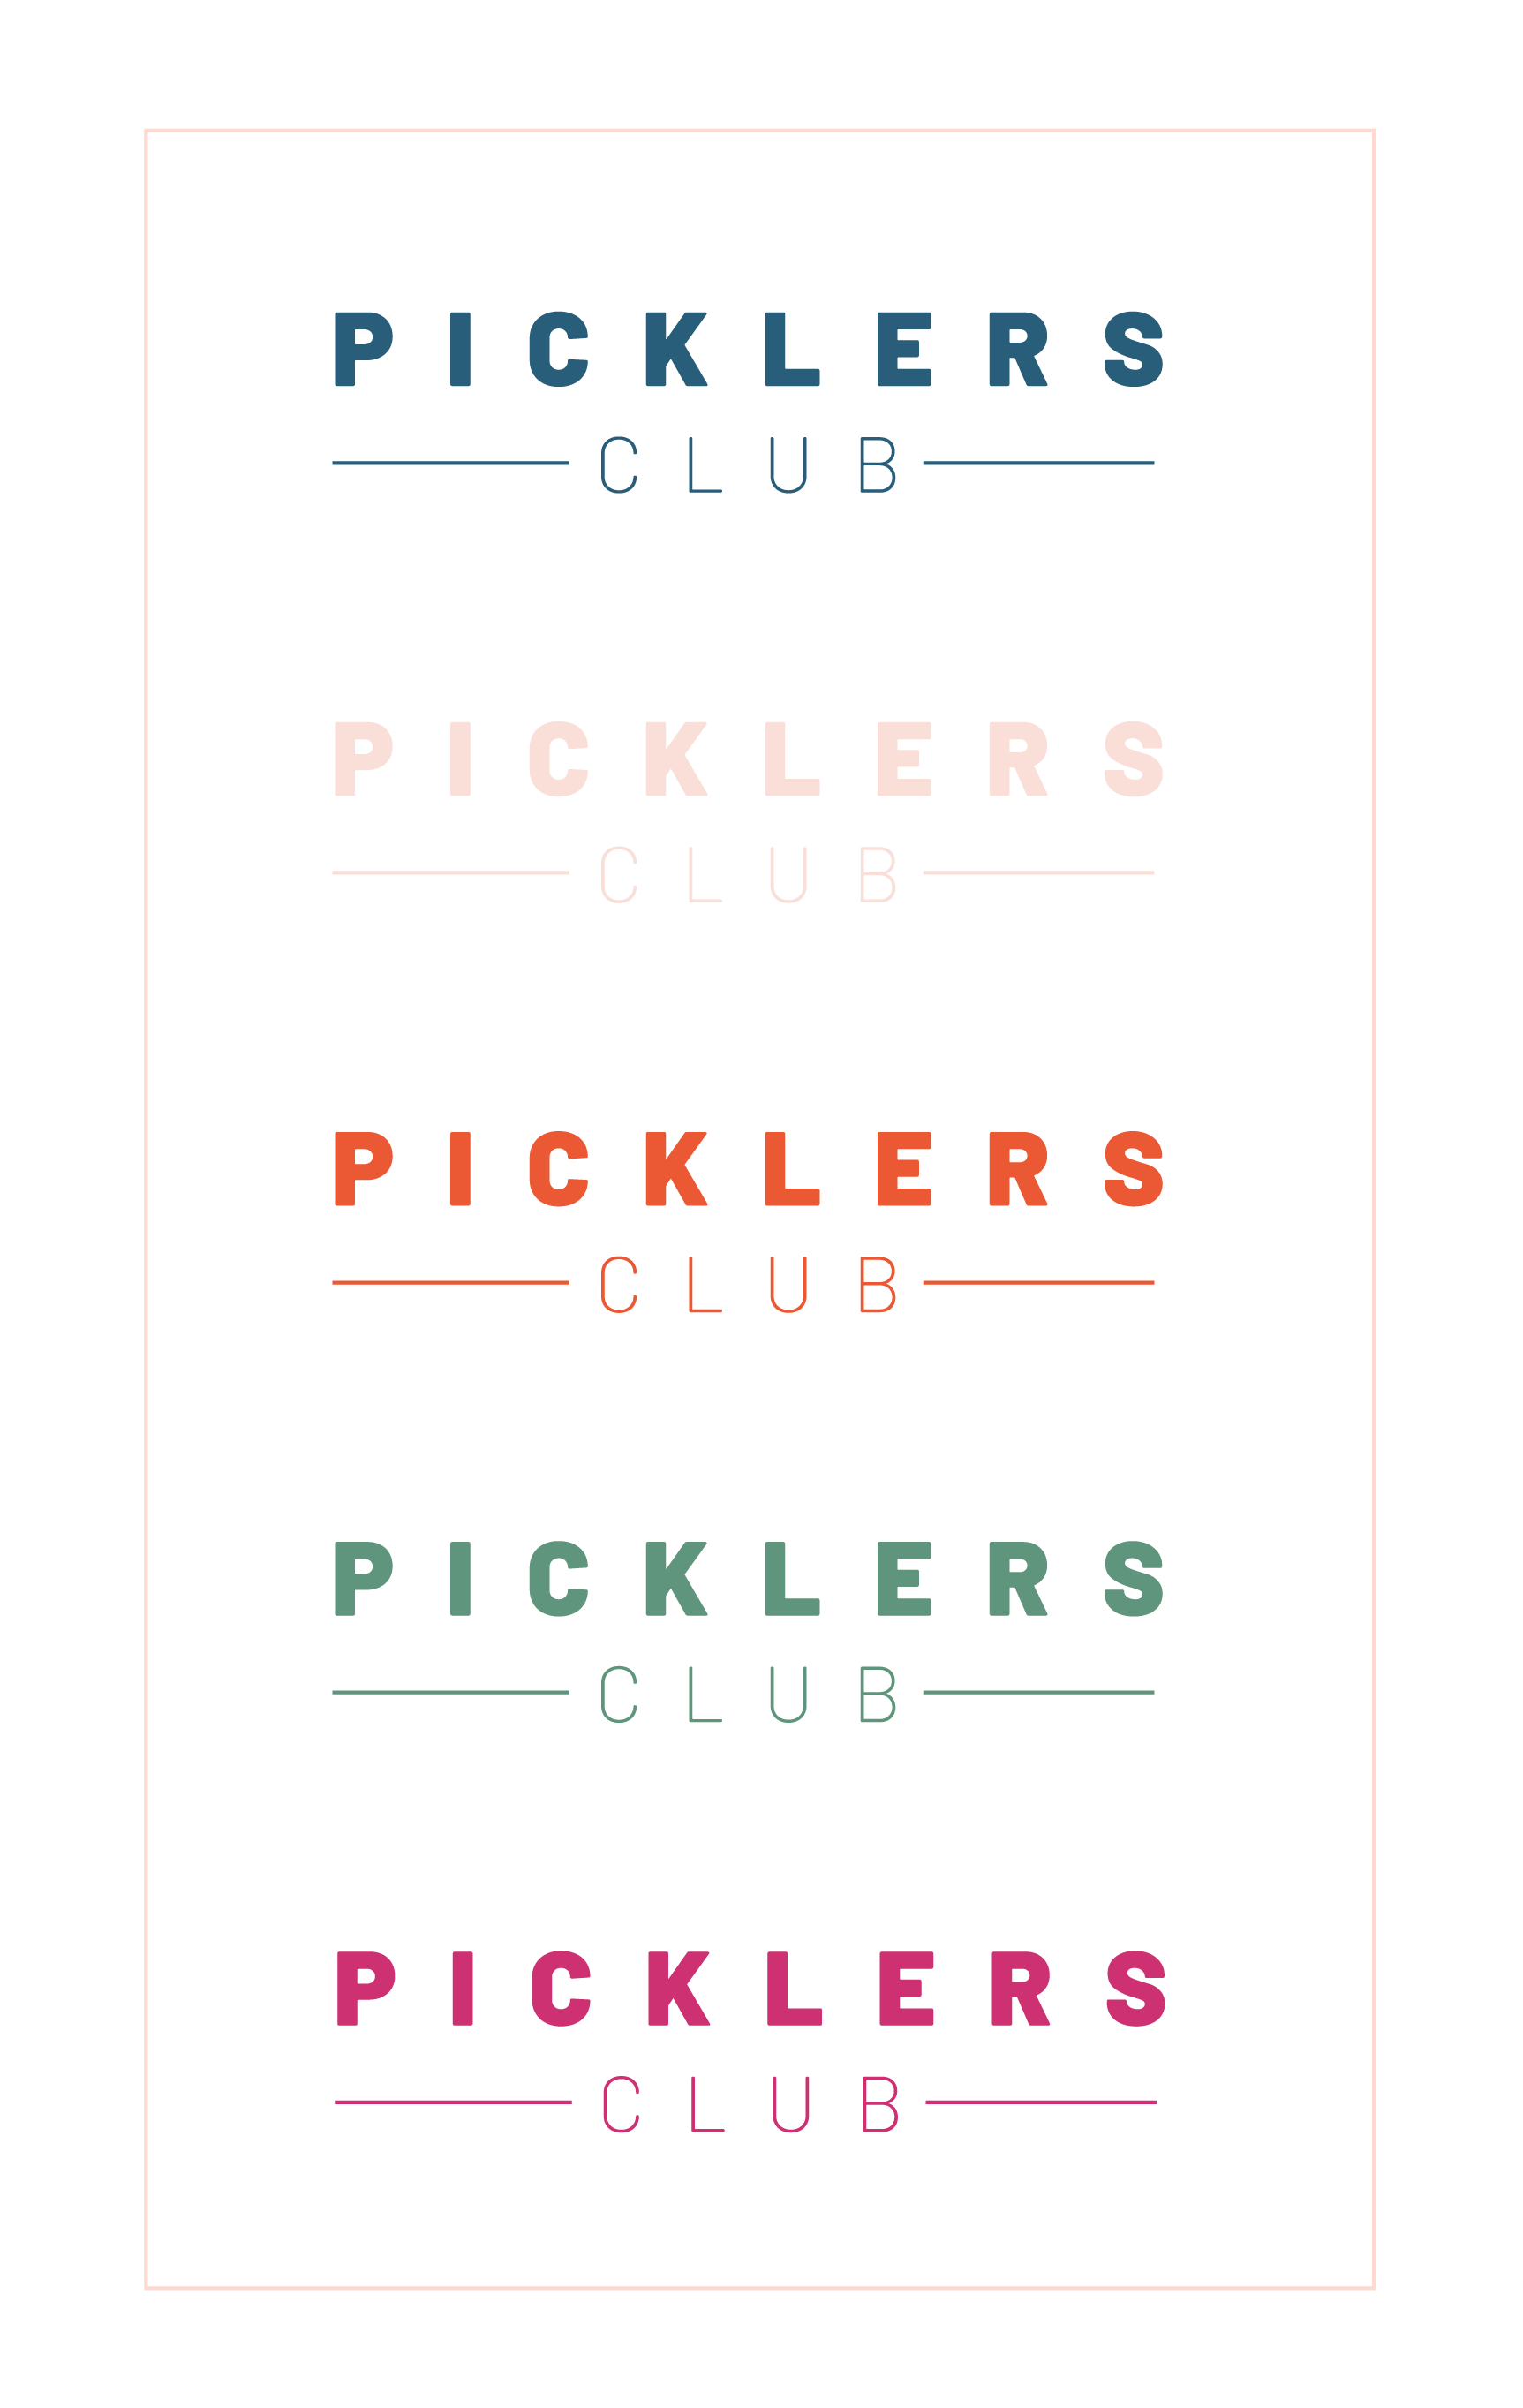 picklersclub 2-03.png